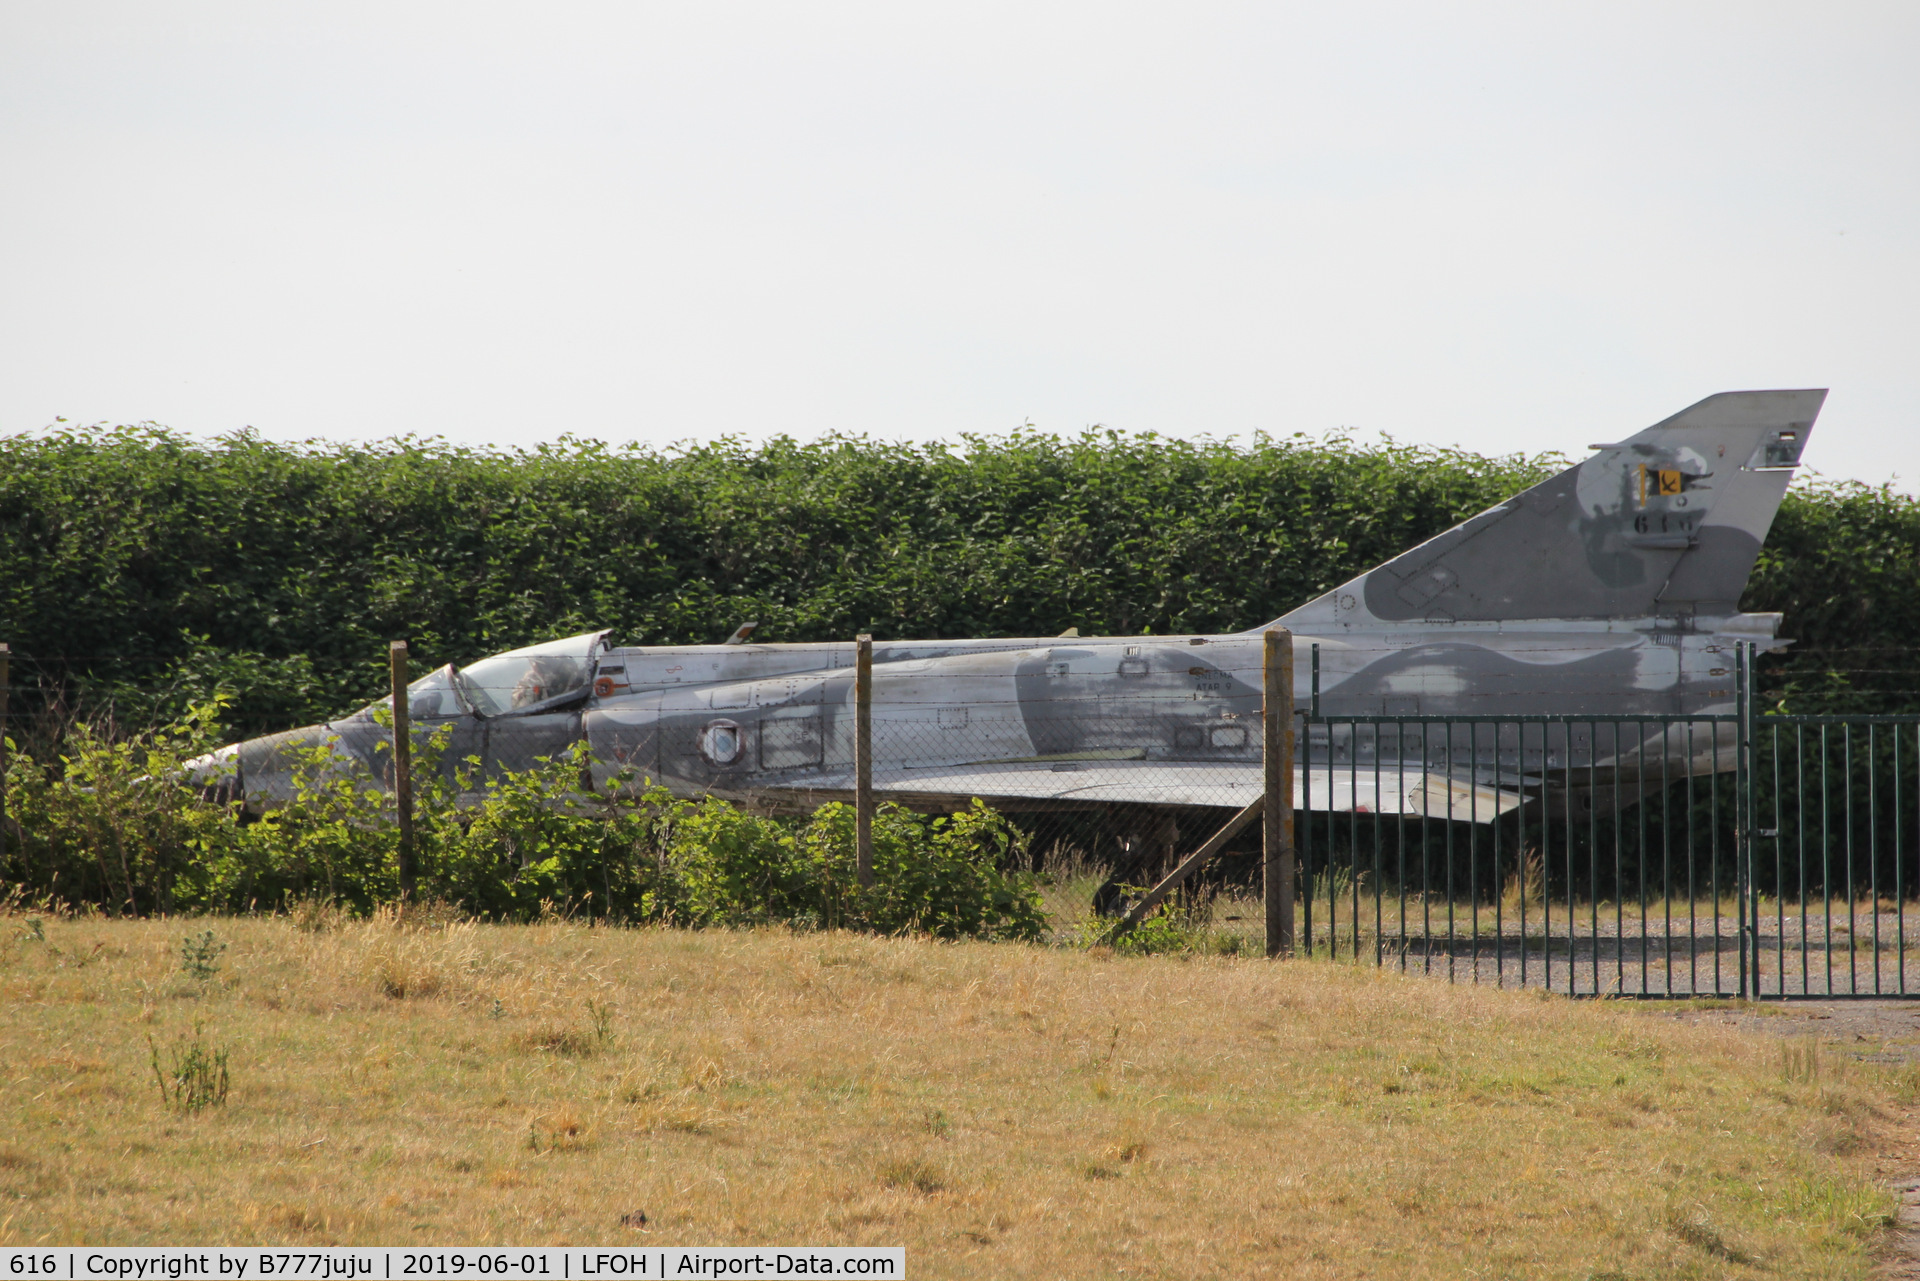 616, Dassault Mirage IIIE C/N 616, store at Le Havre